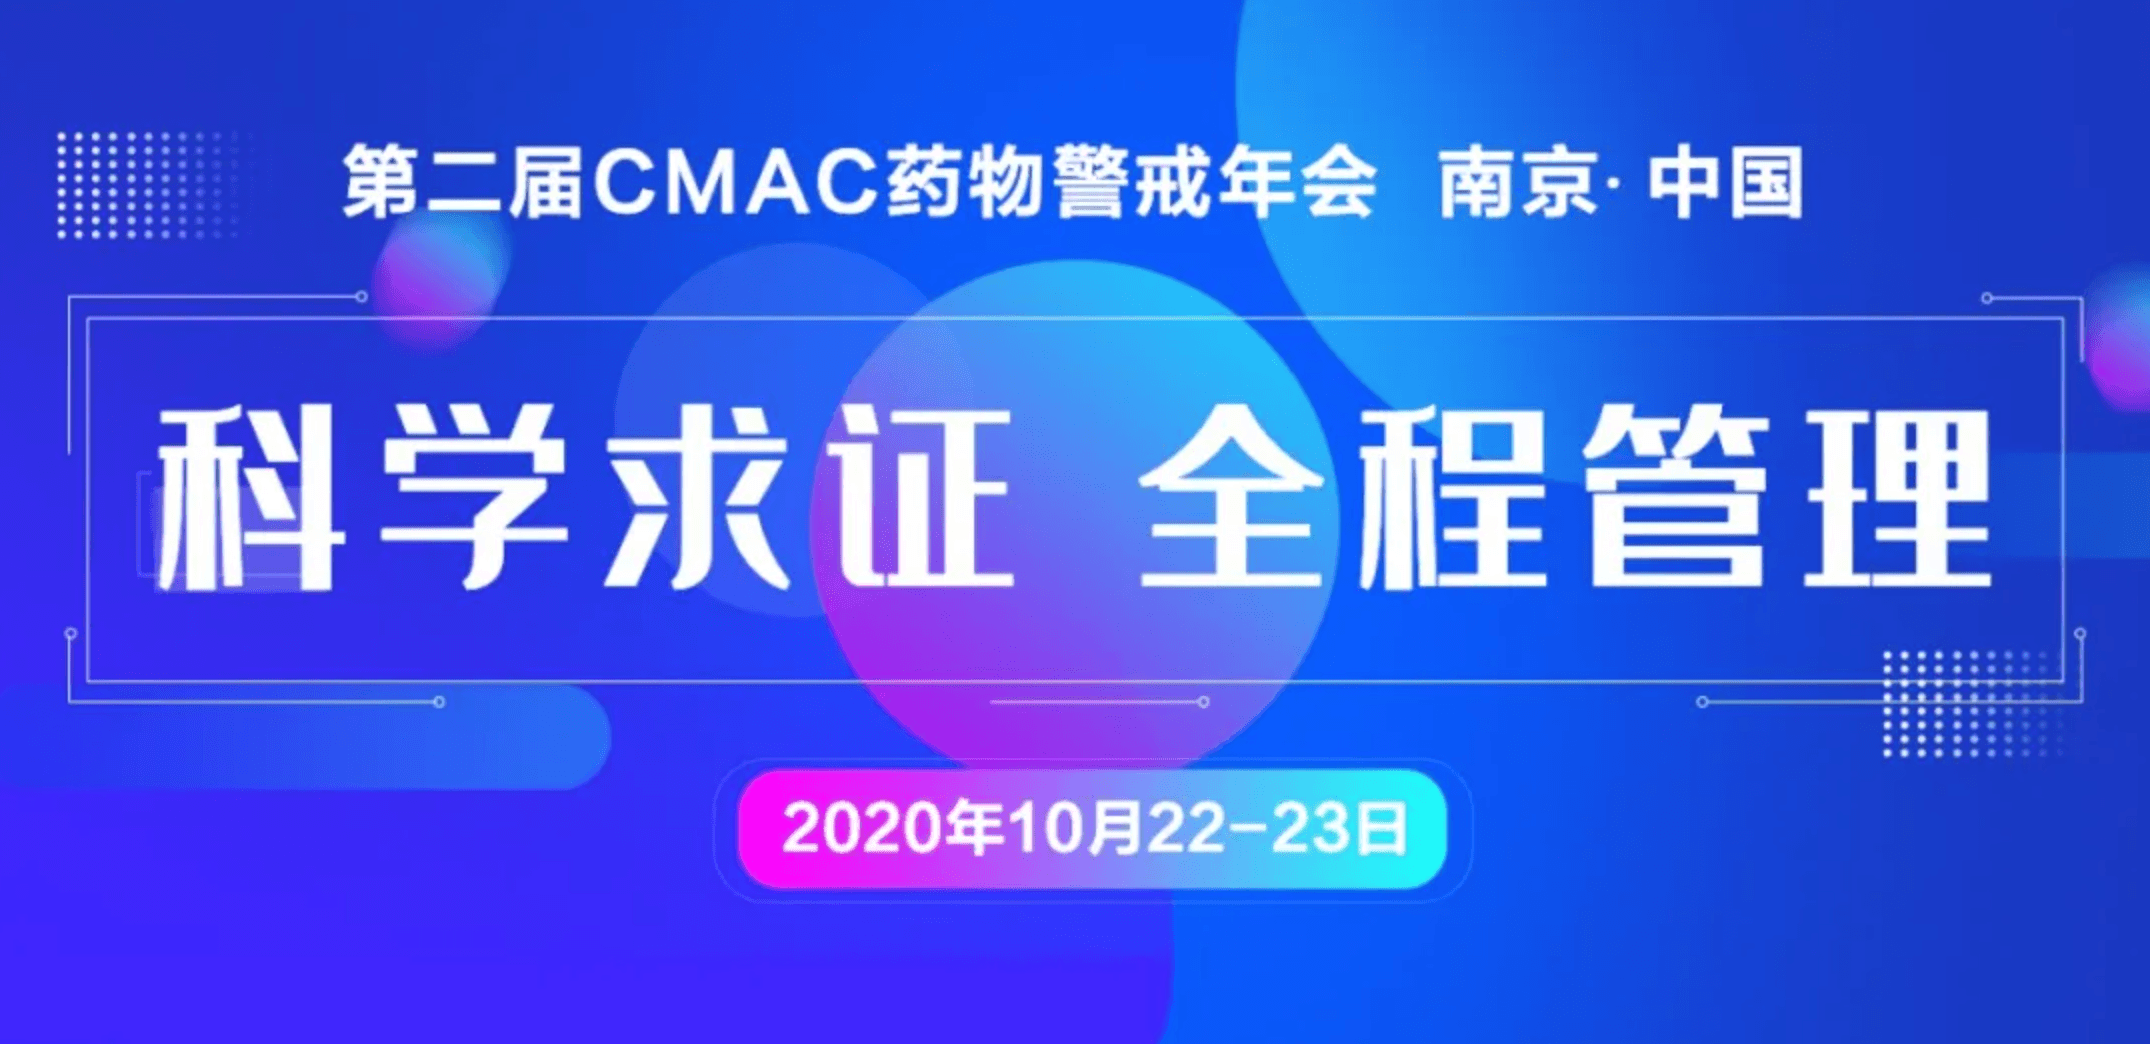 第二届CMAC药物警戒年会